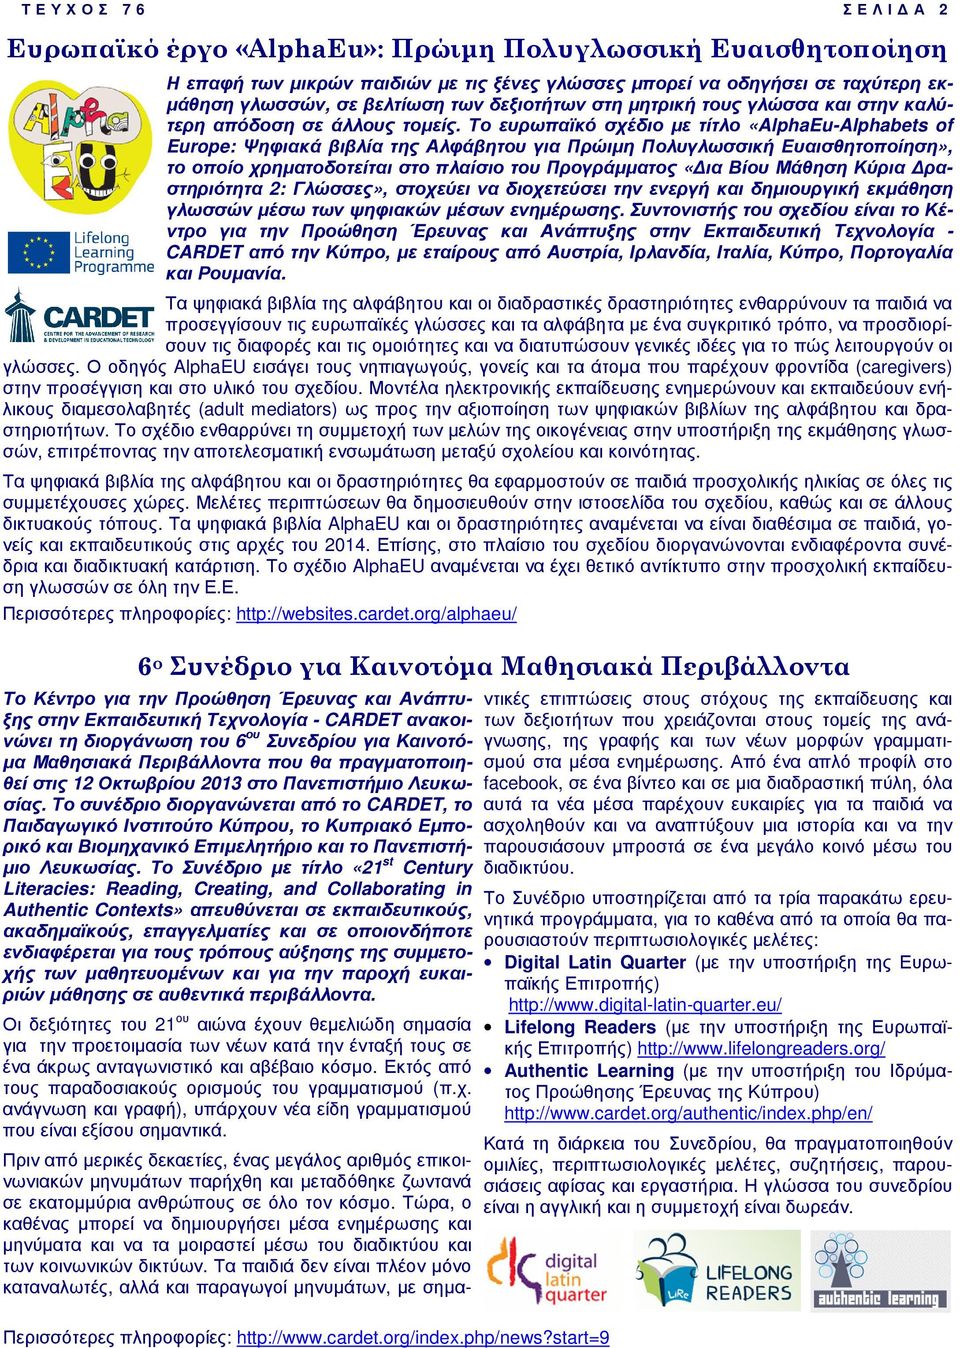 Το ευρωπαϊκό σχέδιο µε τίτλο «AlphaEu-Alphabets of Europe: Ψηφιακά βιβλία της Αλφάβητου για Πρώιµη Πολυγλωσσική Ευαισθητοποίηση», το οποίο χρηµατοδοτείται στο πλαίσιο του Προγράµµατος «ια Βίου Μάθηση